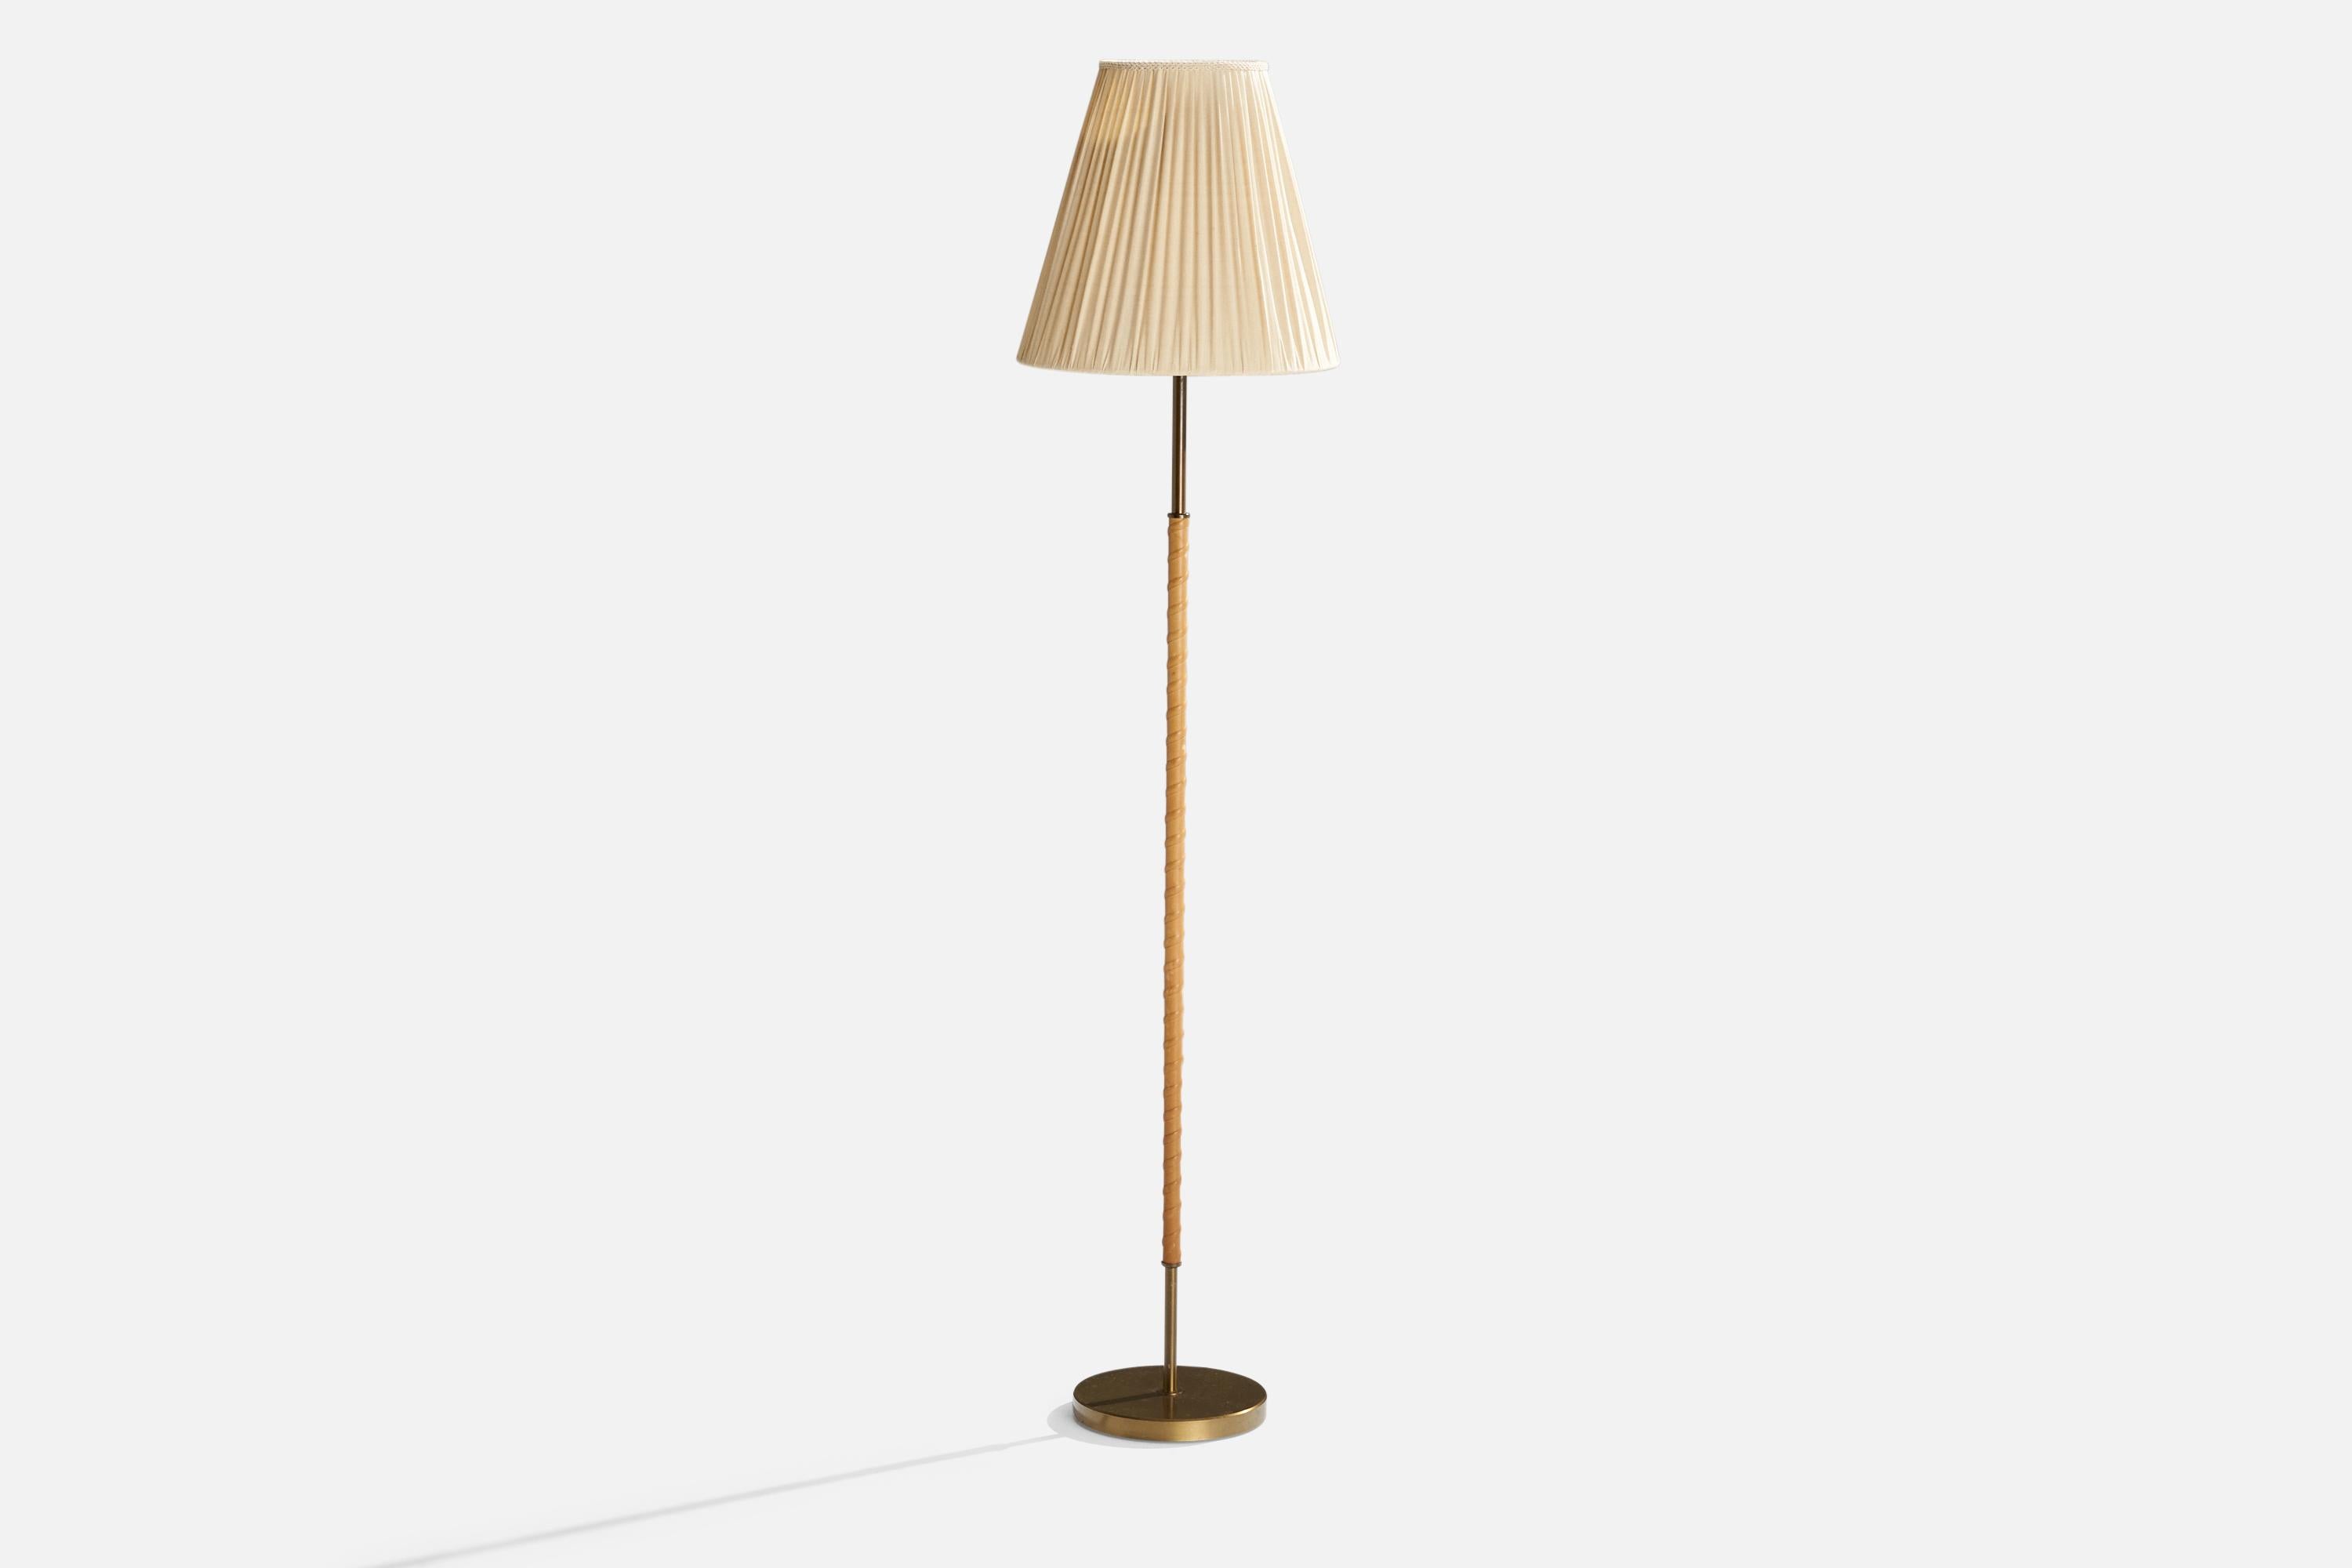 Lampadaire en laiton, cuir et tissu beige clair, conçu par Harald Notini et produit par Böhlmarks, Suède, années 1940.

Dimensions globales (pouces):62.25